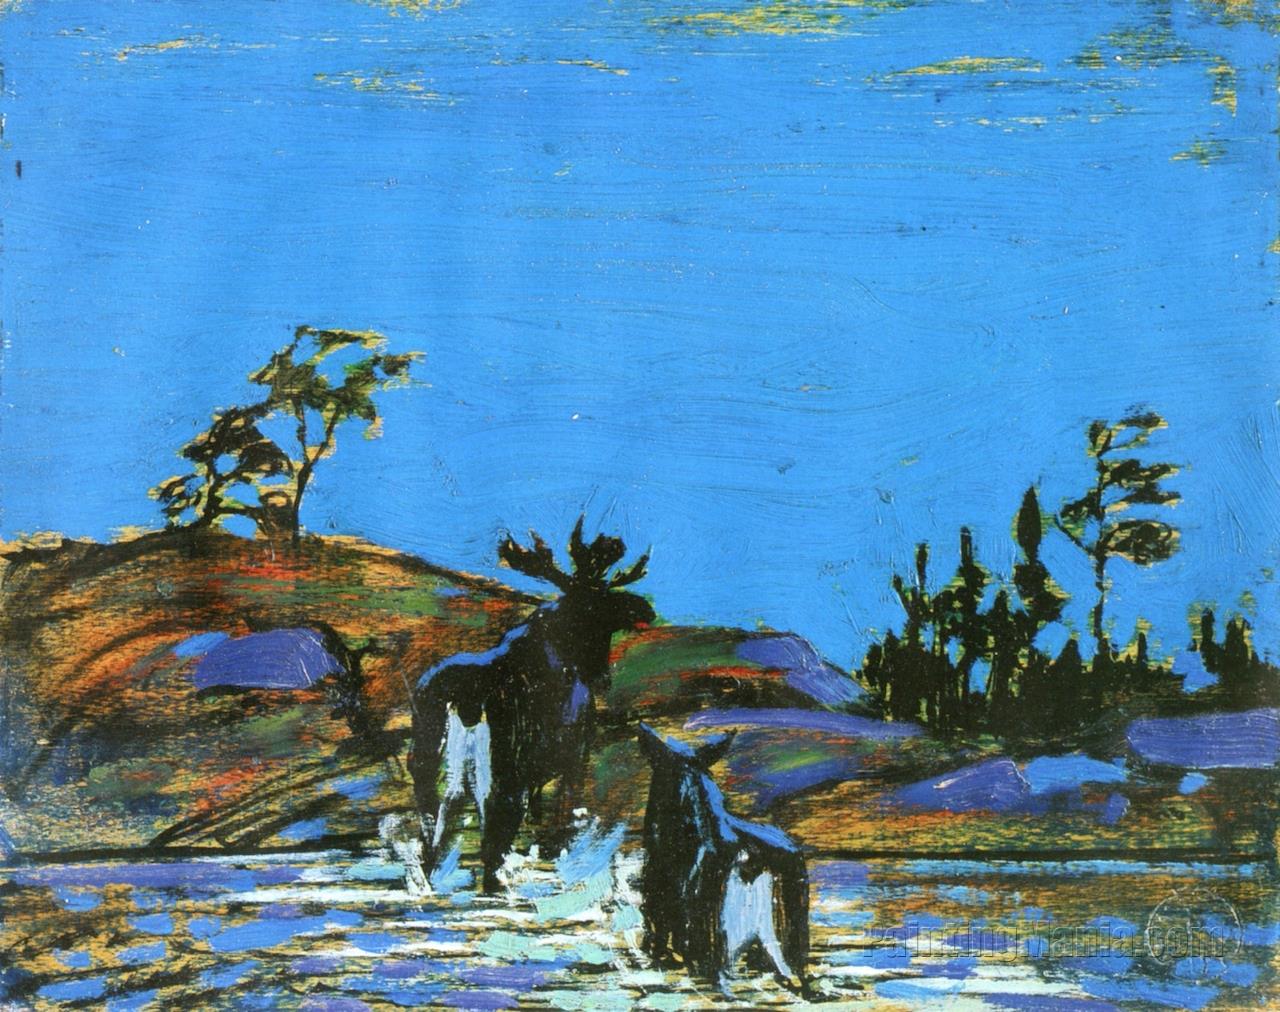 Moose at Night